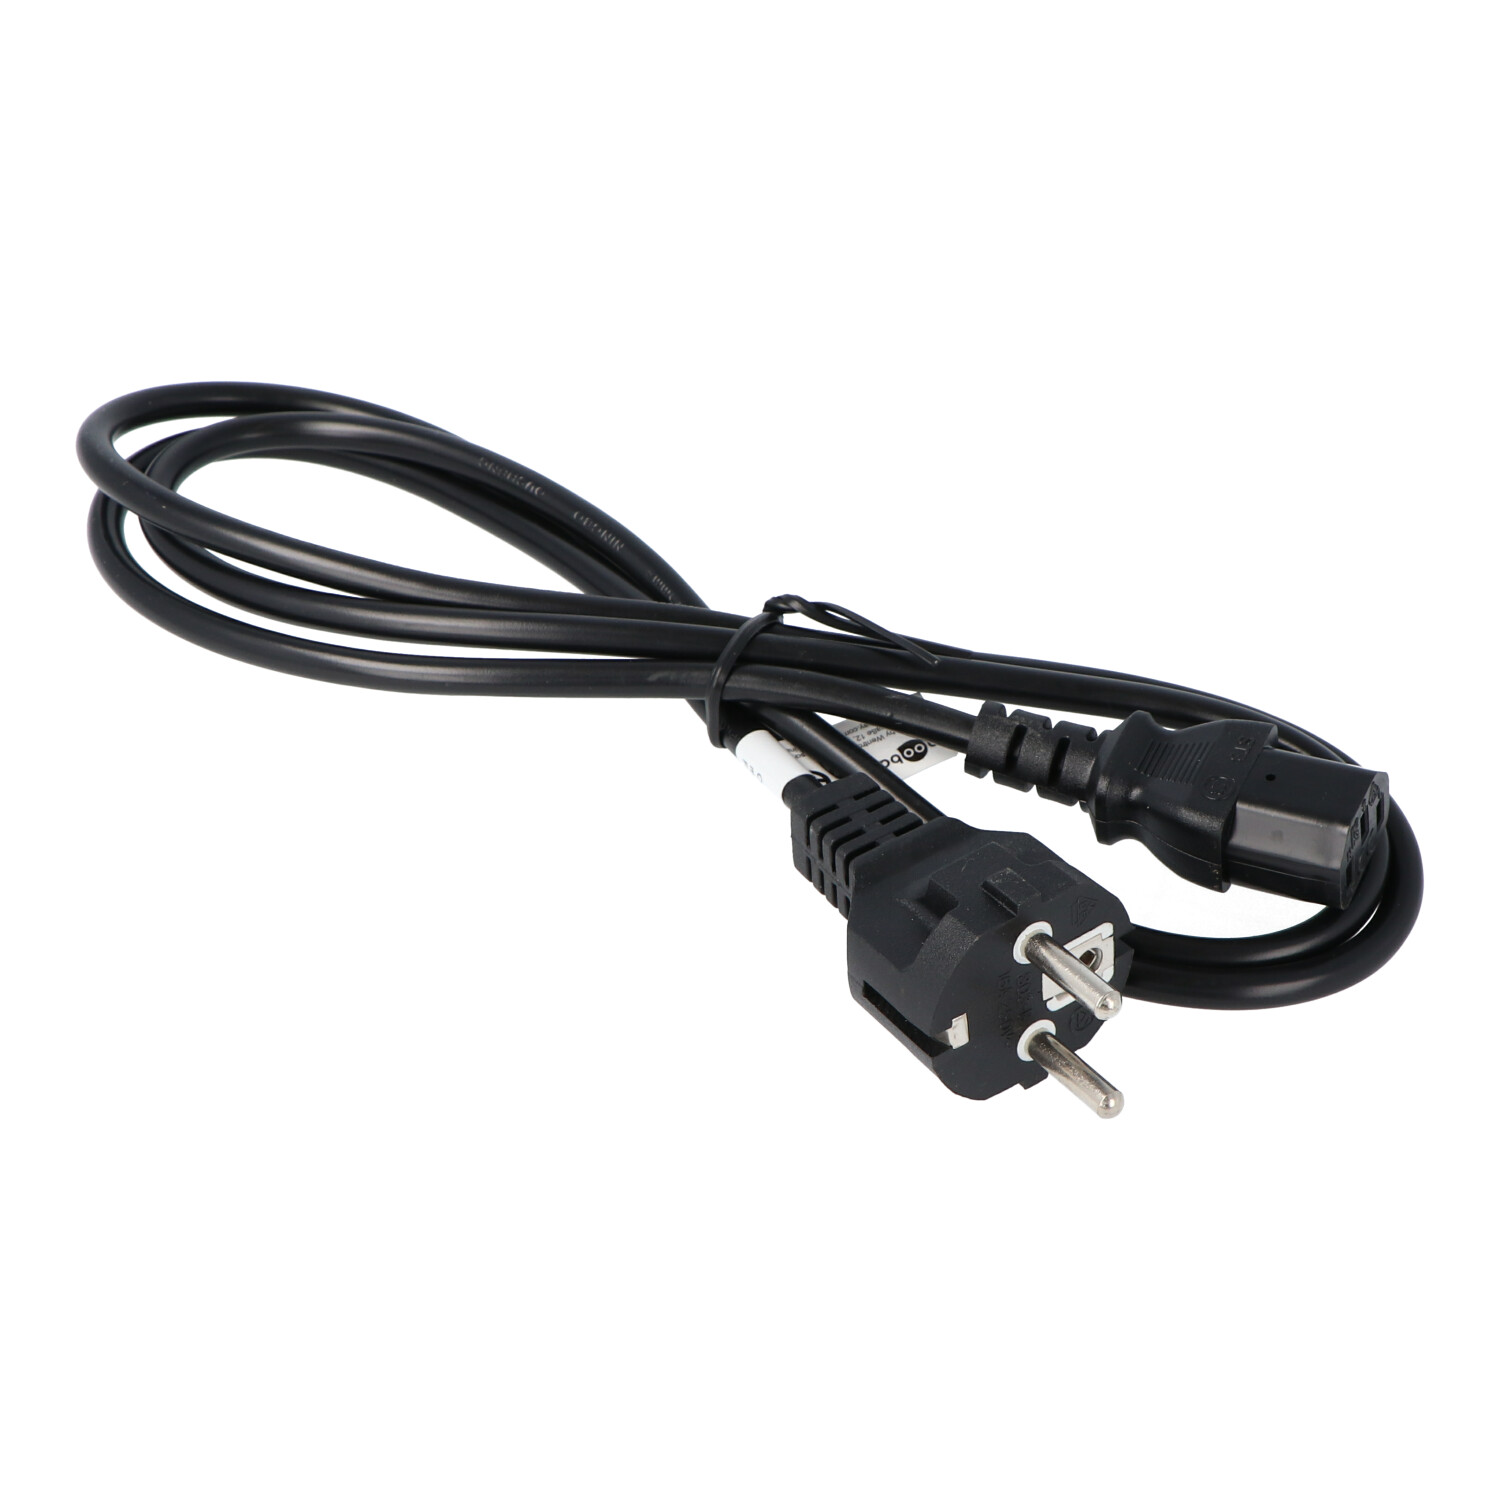 Kaltgeräte Anschlusskabel schwarz 1,5 Meter, geeignet für Kaltgeräte wie z.B. PC, Monitor, Beamer